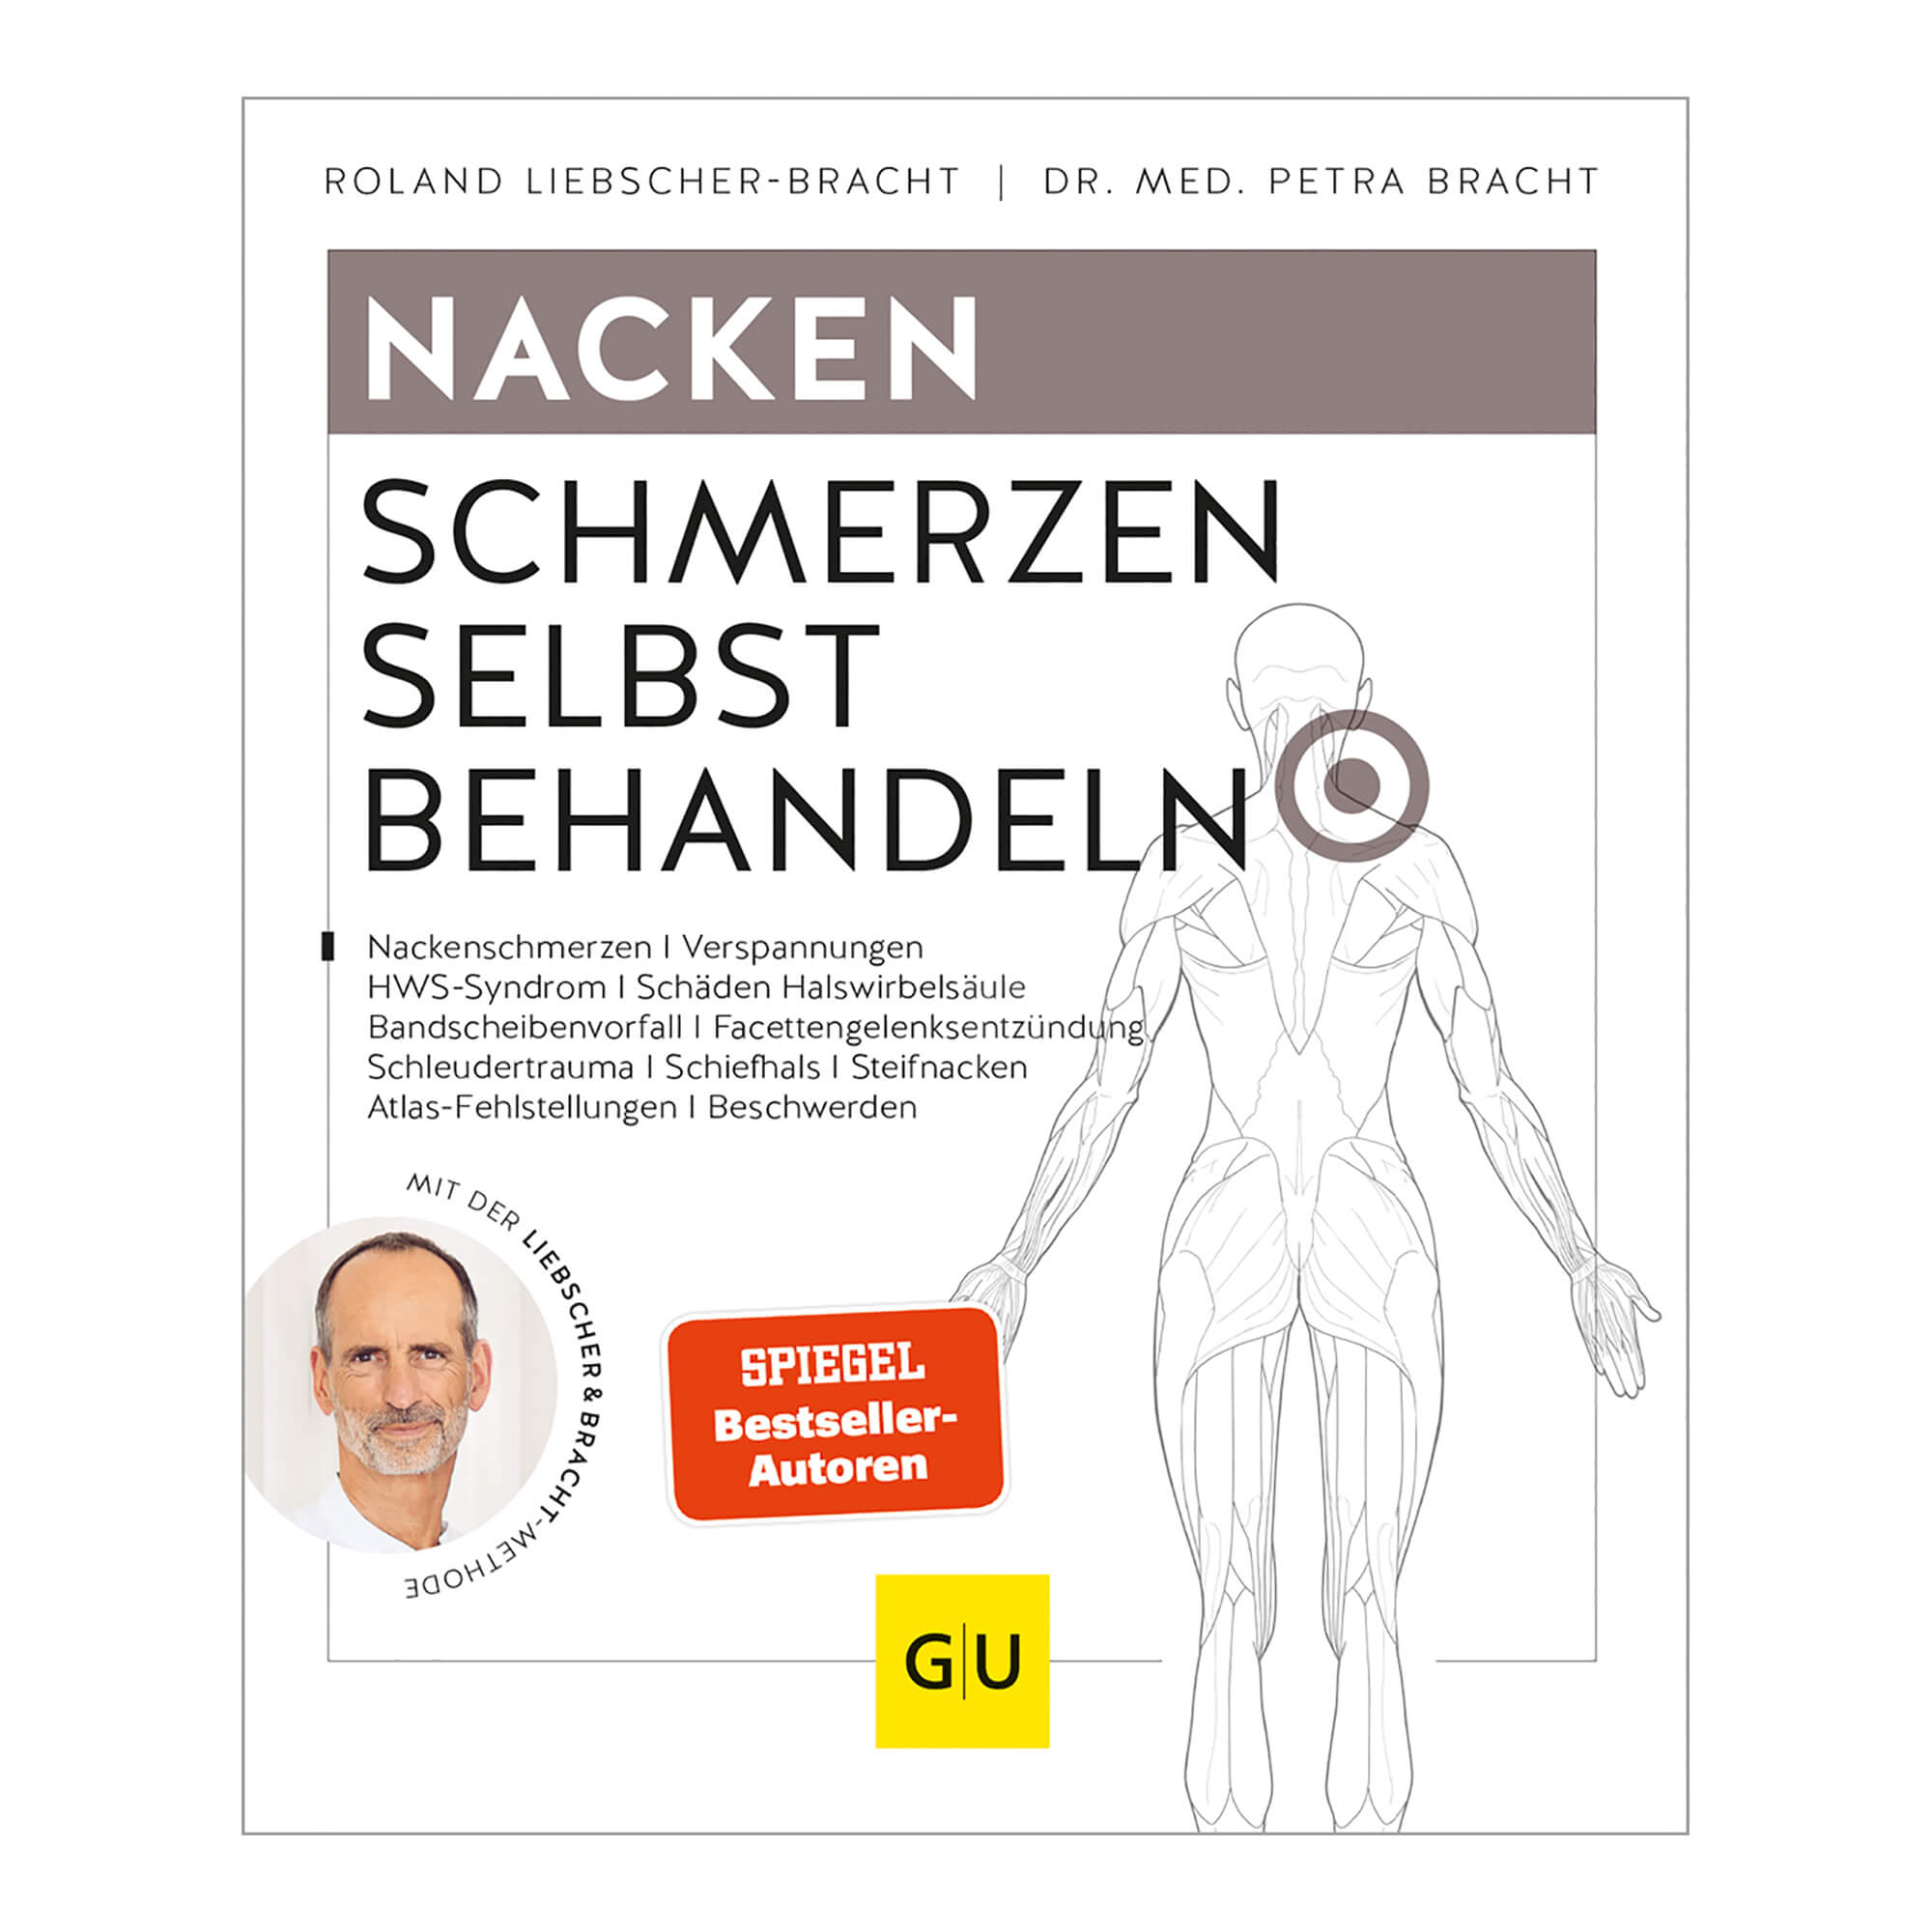 Praktisches Übungsbuch gegen Schulter- & Nackenschmerzen mit der Liebscher & Bracht-Methode.